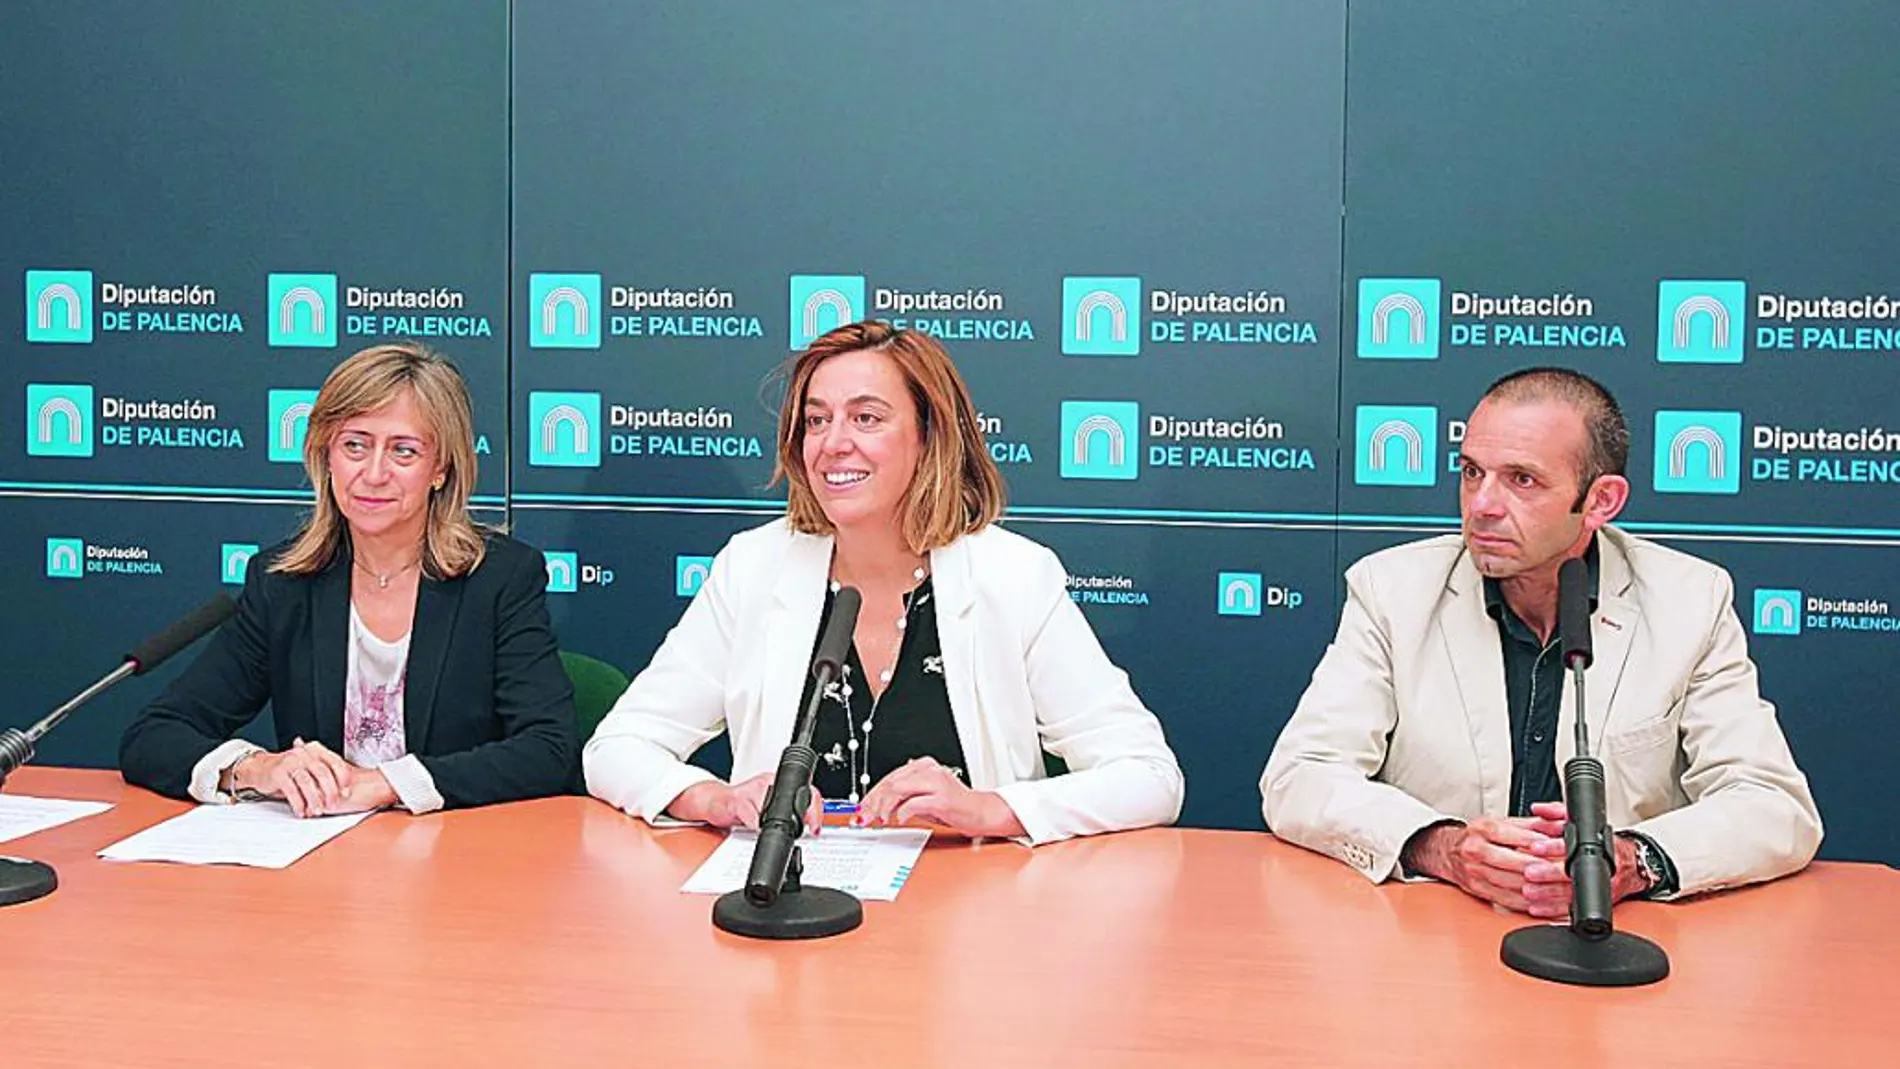 La presidenta de la Diputación de Palencia, Ángeles Armisén, junto a María José de la Fuente y Ángel Gómez.